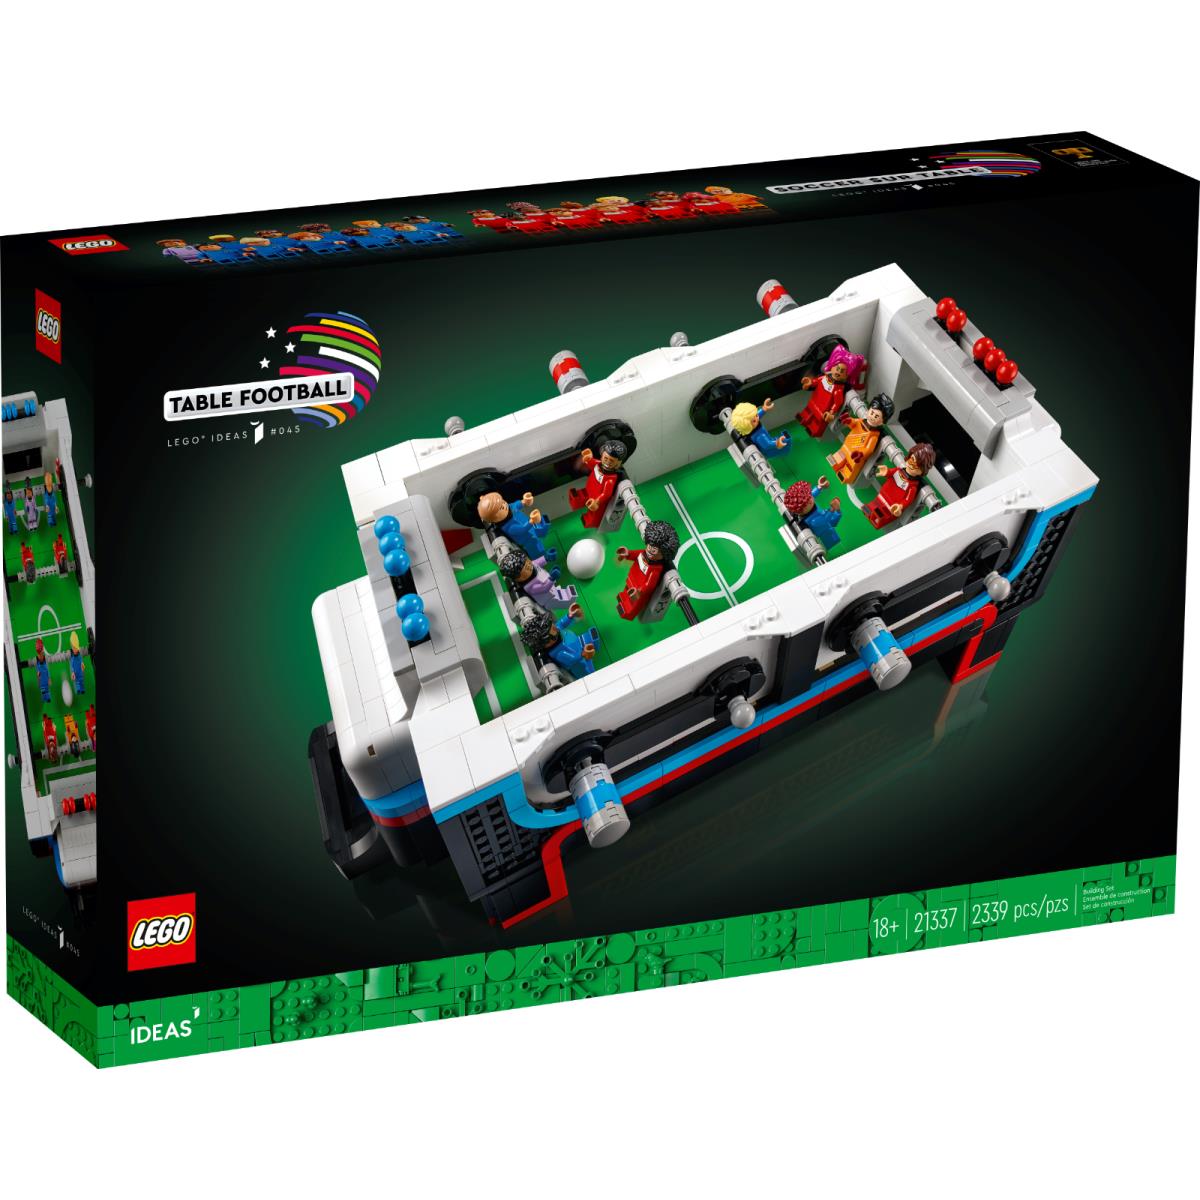 Lego 21337 Ideas Table Football Perfect Box Guarantee